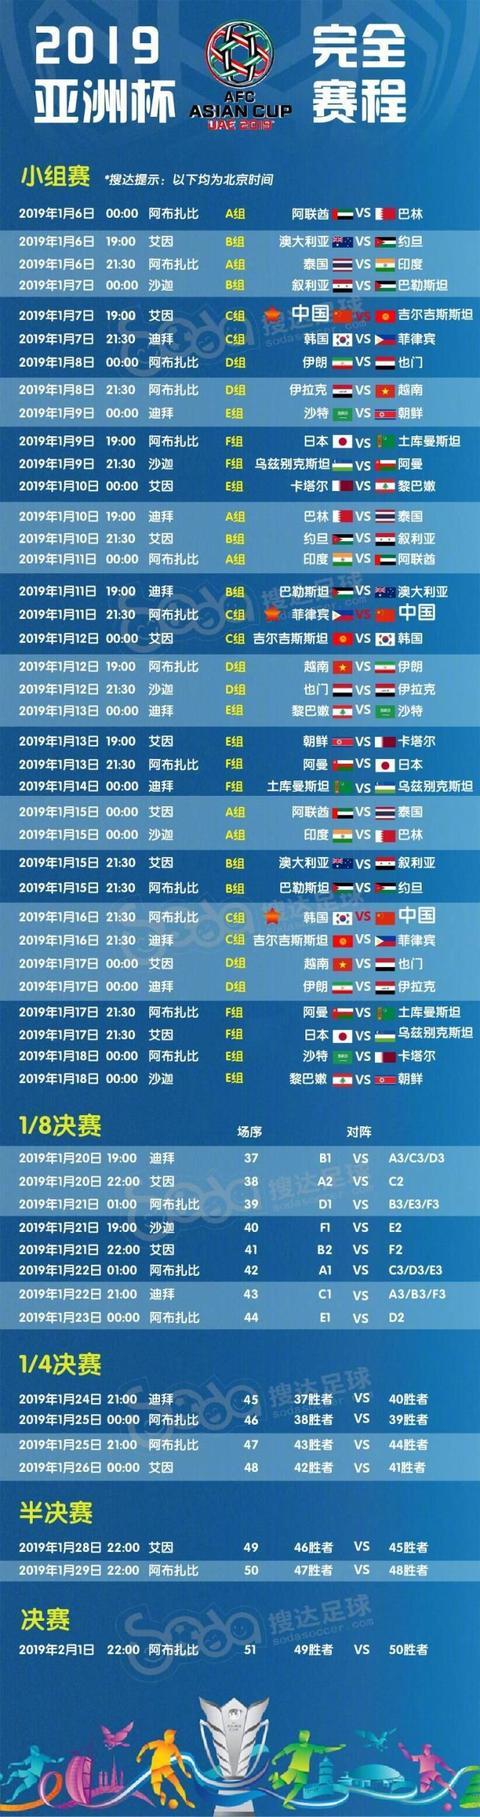 世界杯亚洲预选赛赛程表